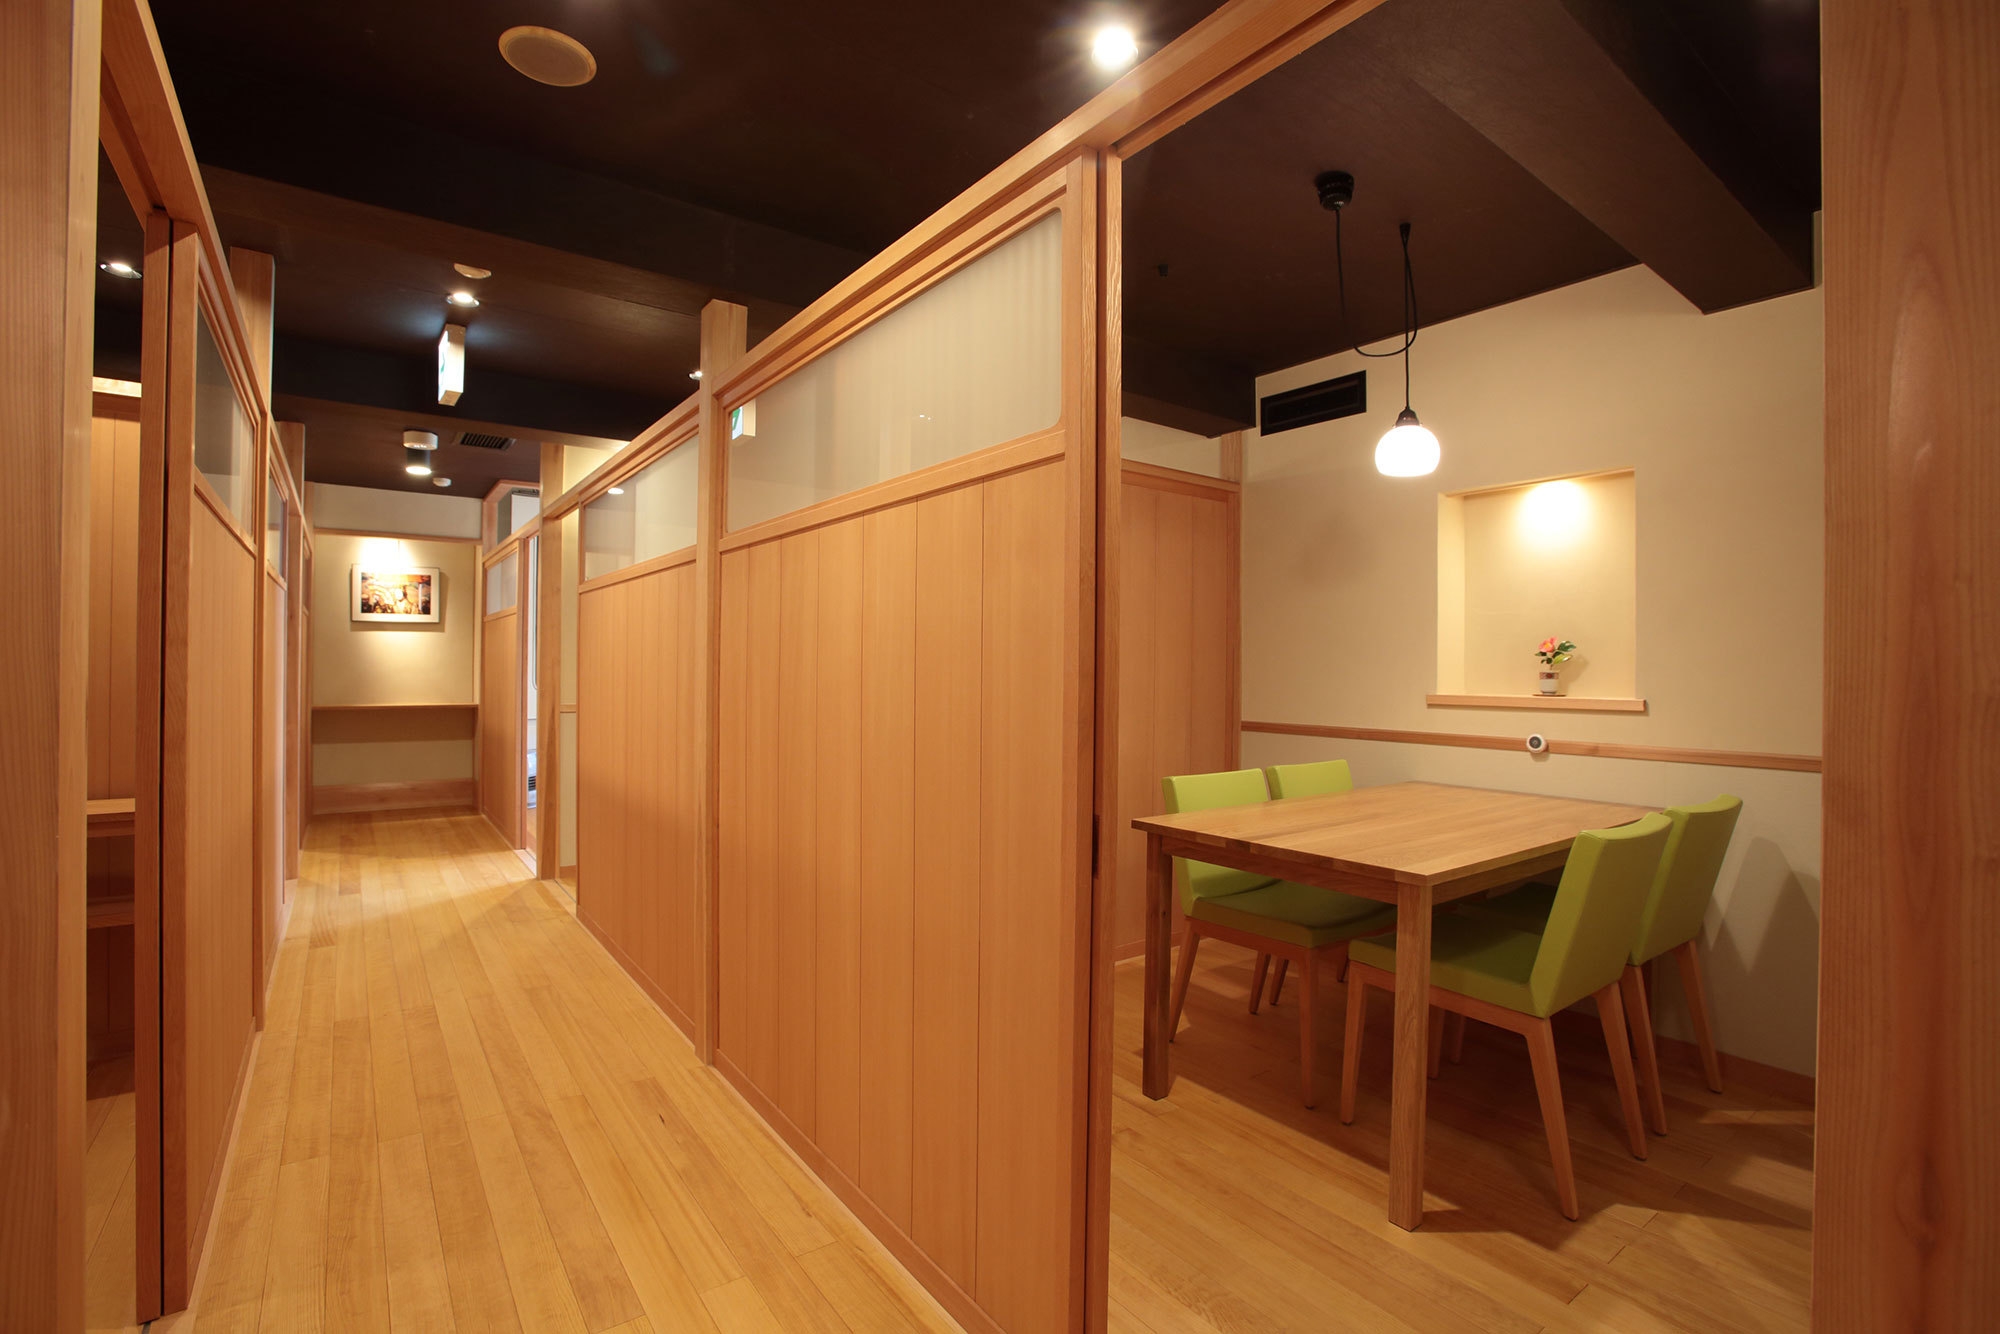 【金沢ひとり旅】古き良き、静かな温泉宿でゆったり■石屋会席は食事処のプライベートな空間で